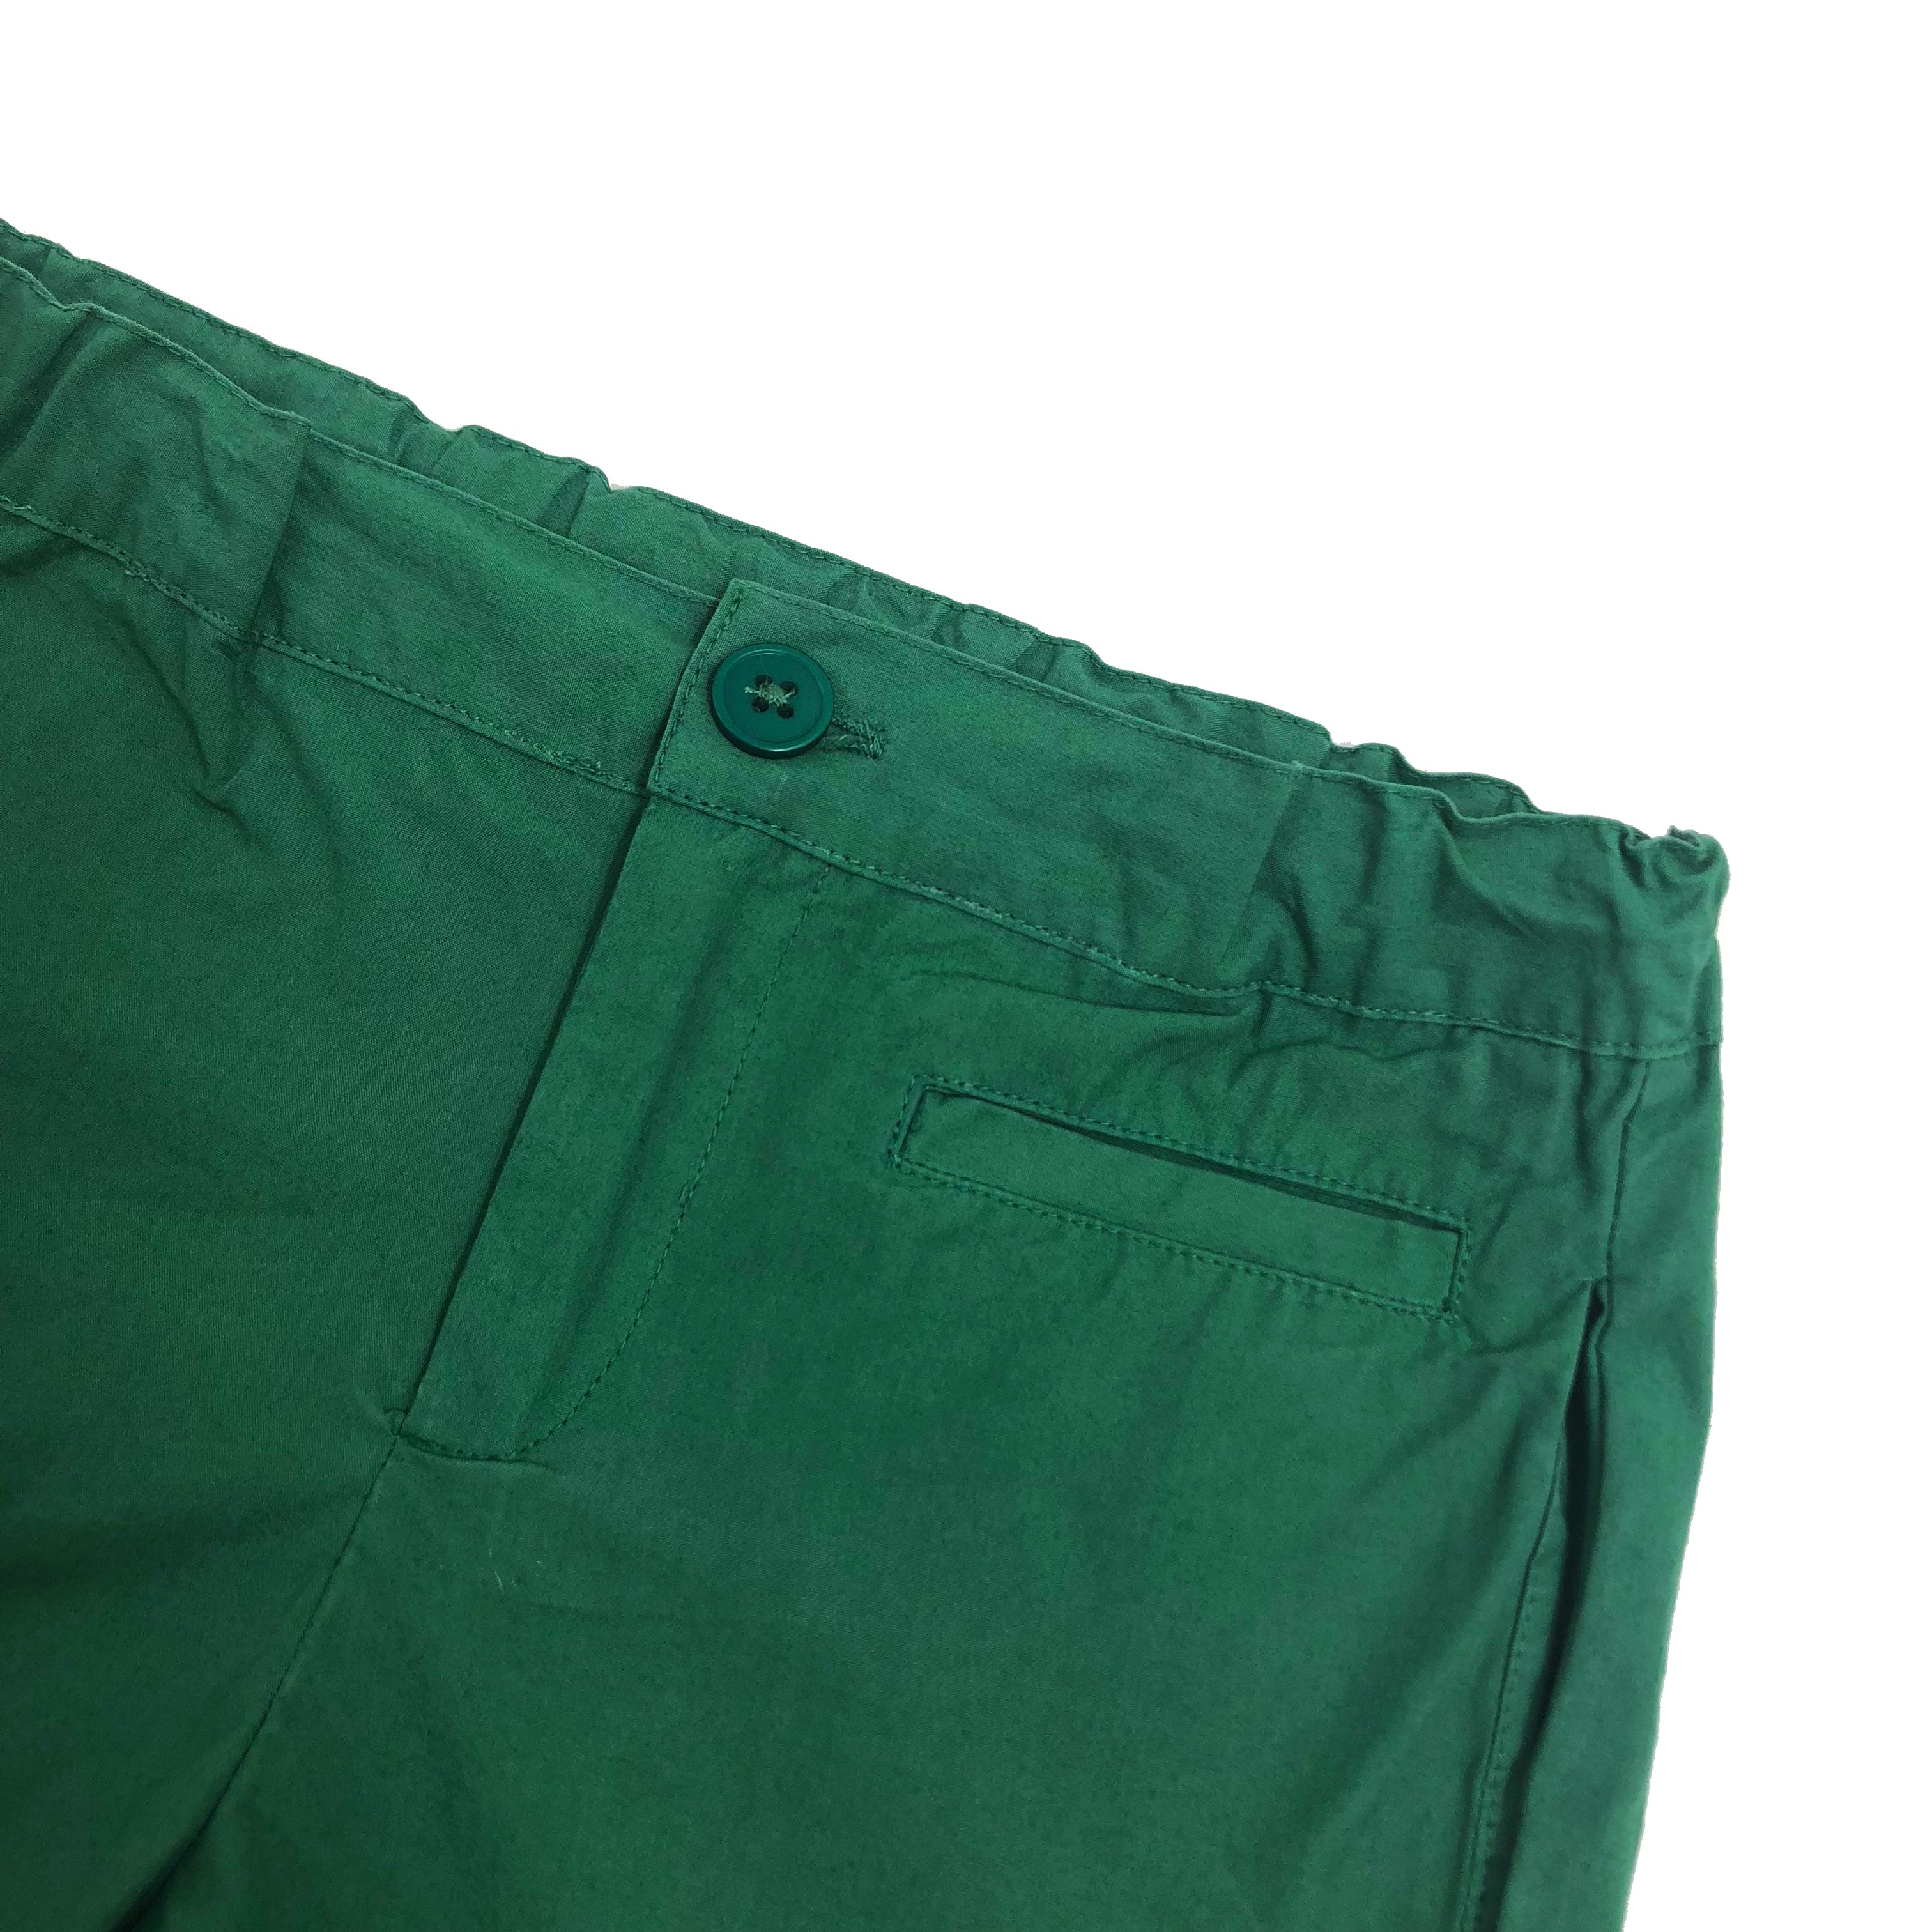 Boys Min Green Cotton Woven Shorts